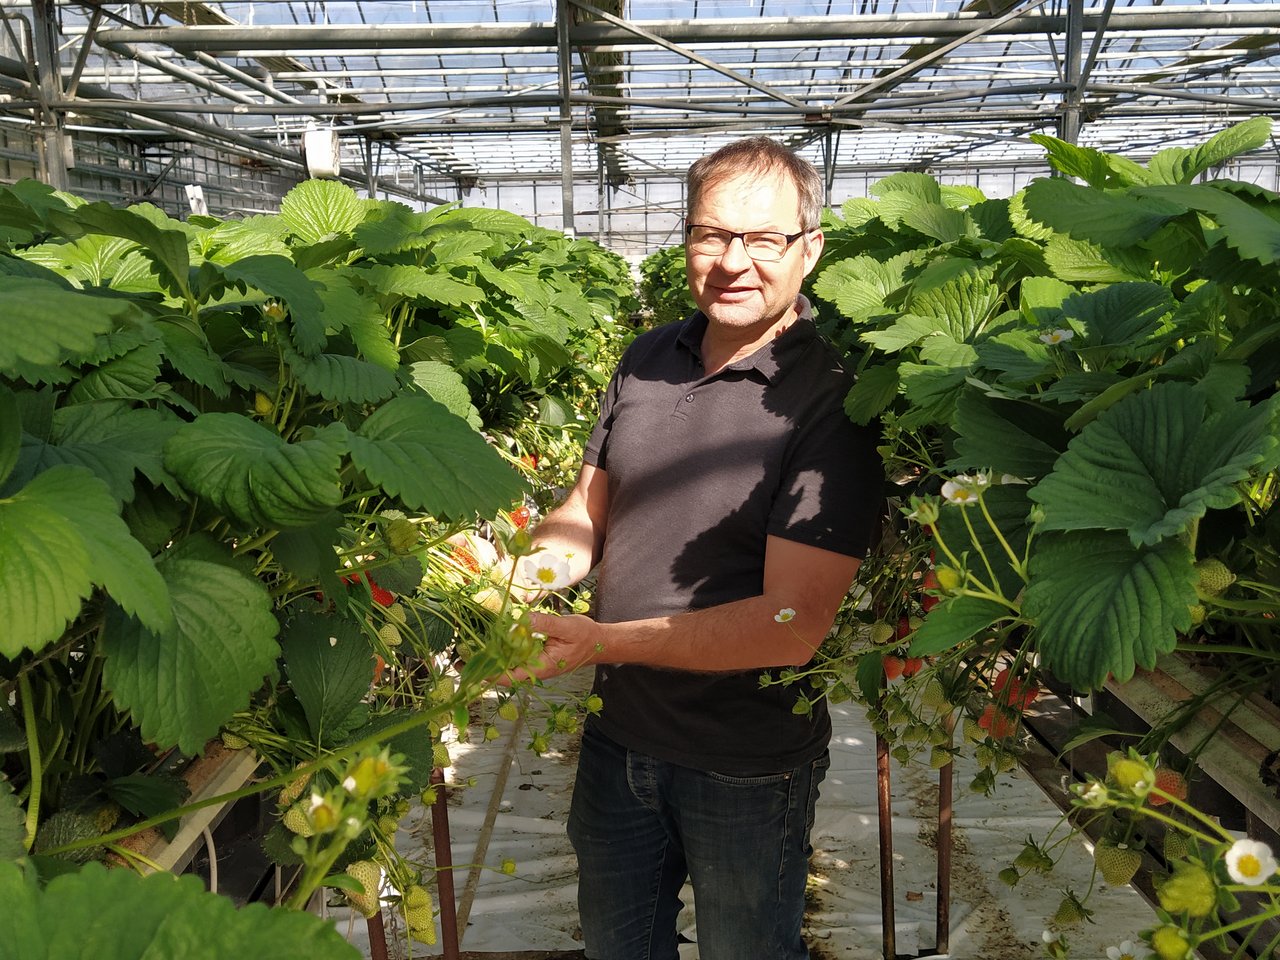 Wie bei Philipp Engel startet in diesen Tagen auf vielen Beerenbetrieben die Erdbeerernte in den Gewächshäusern. (Bild zVg)